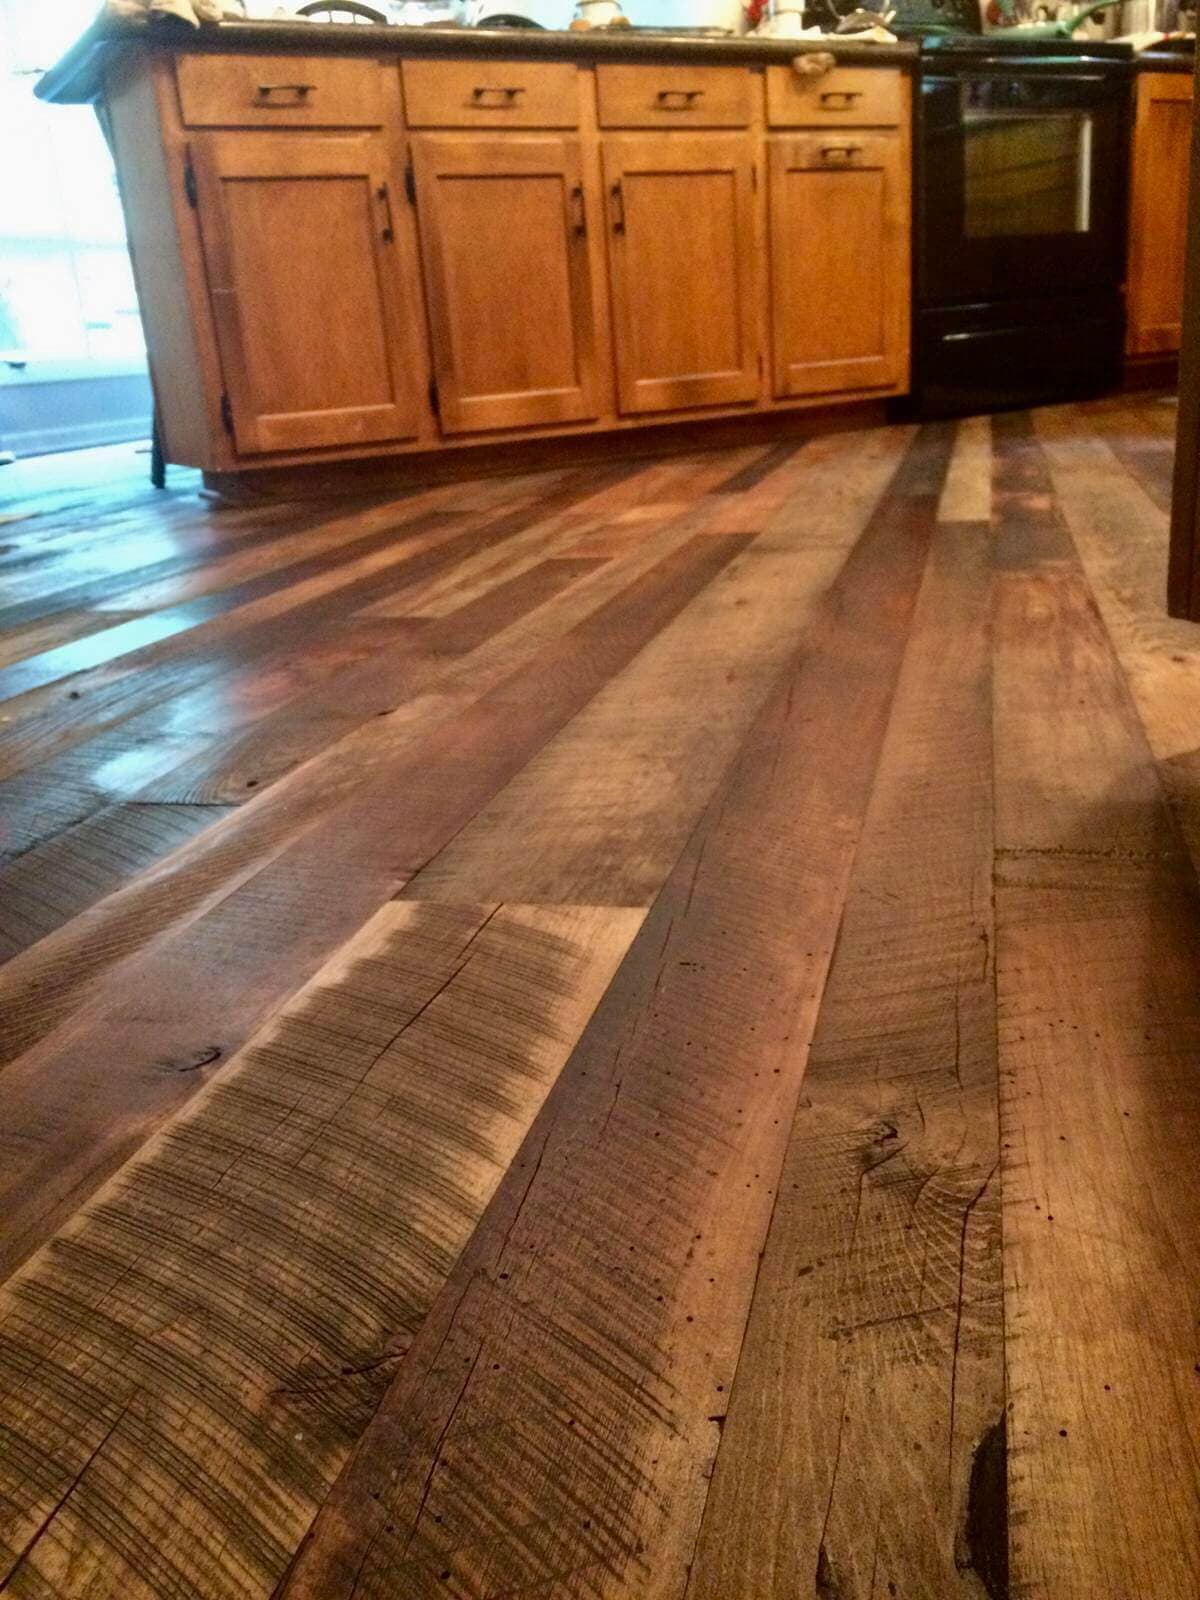 Reclaimed hardwood flooring in kitchen.